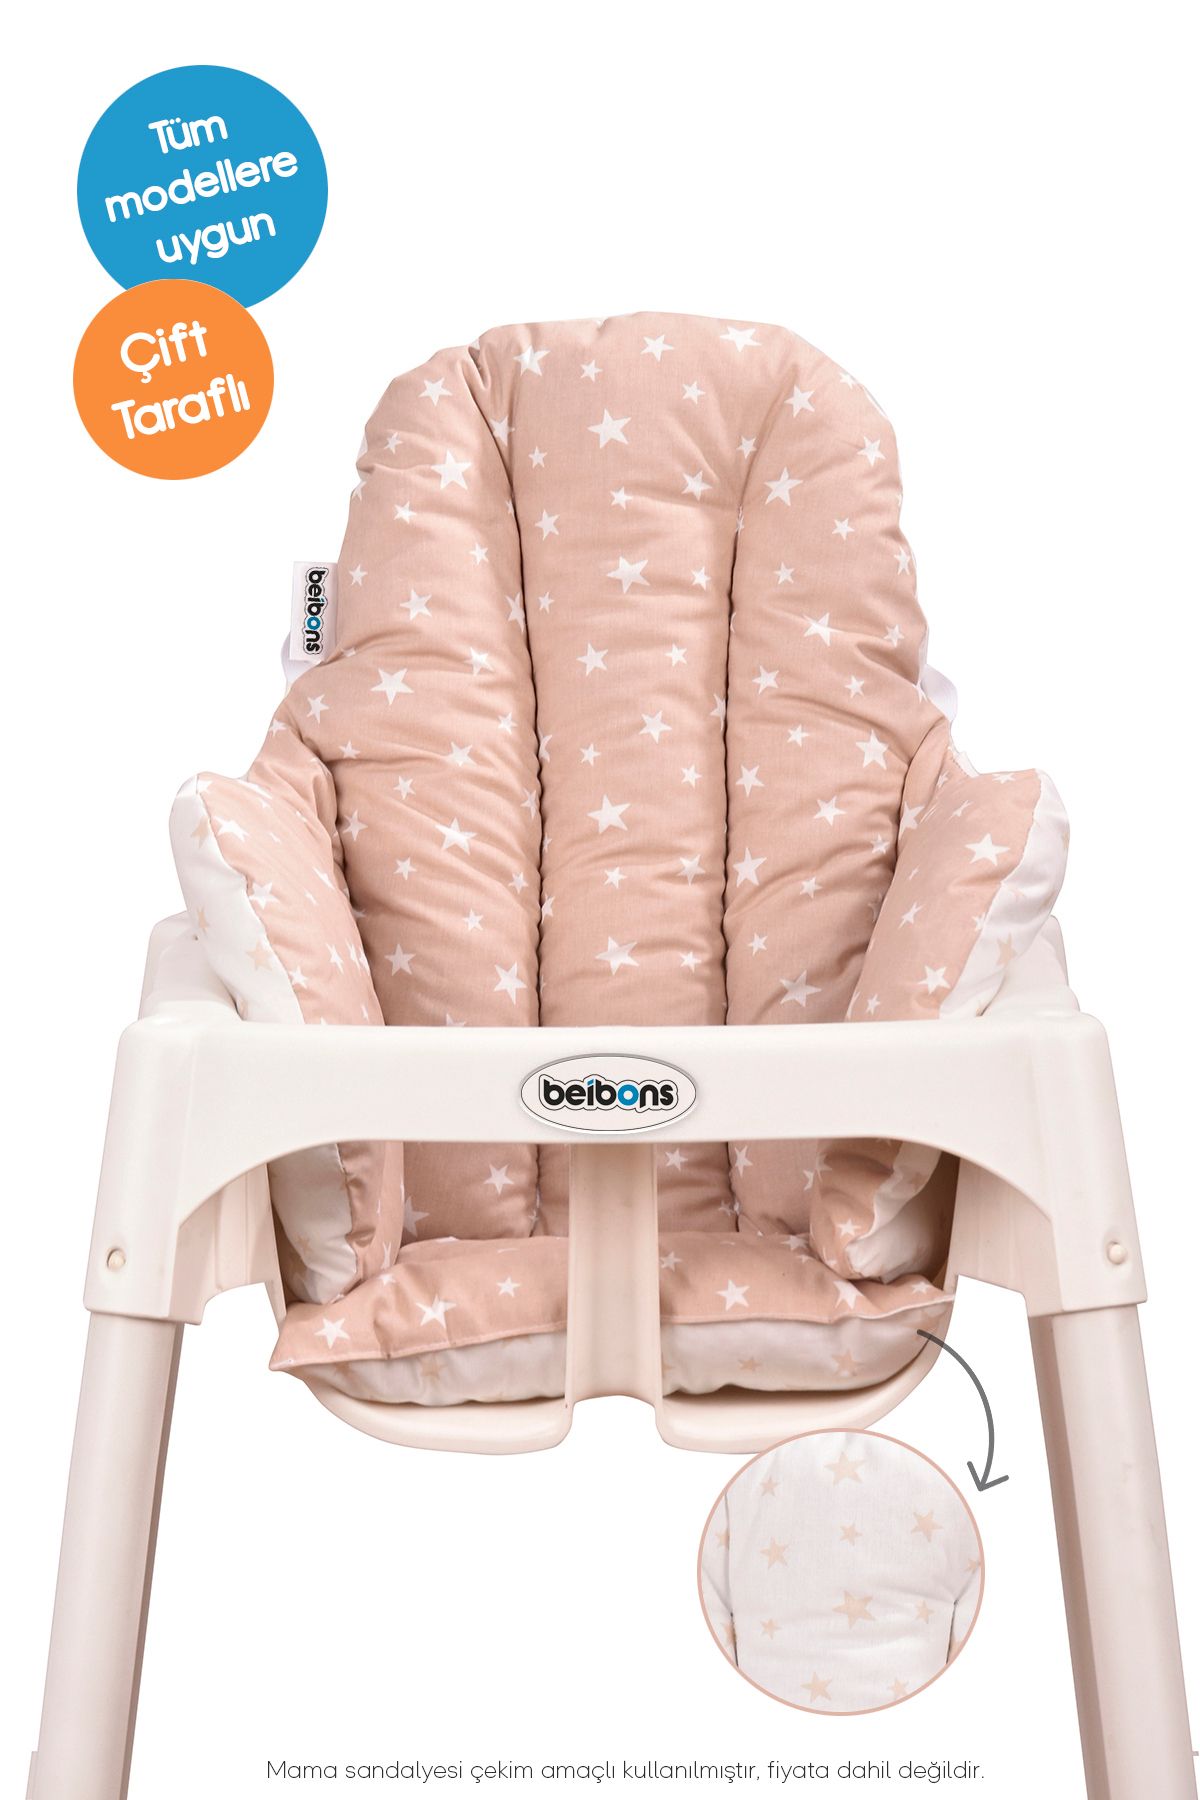 Beibons Çift Taraflı Bebek Mama Sandalyesi Minderi - Pamuklu Rahat Elyaf Dolgulu Mama Sandalyesi Yastığı